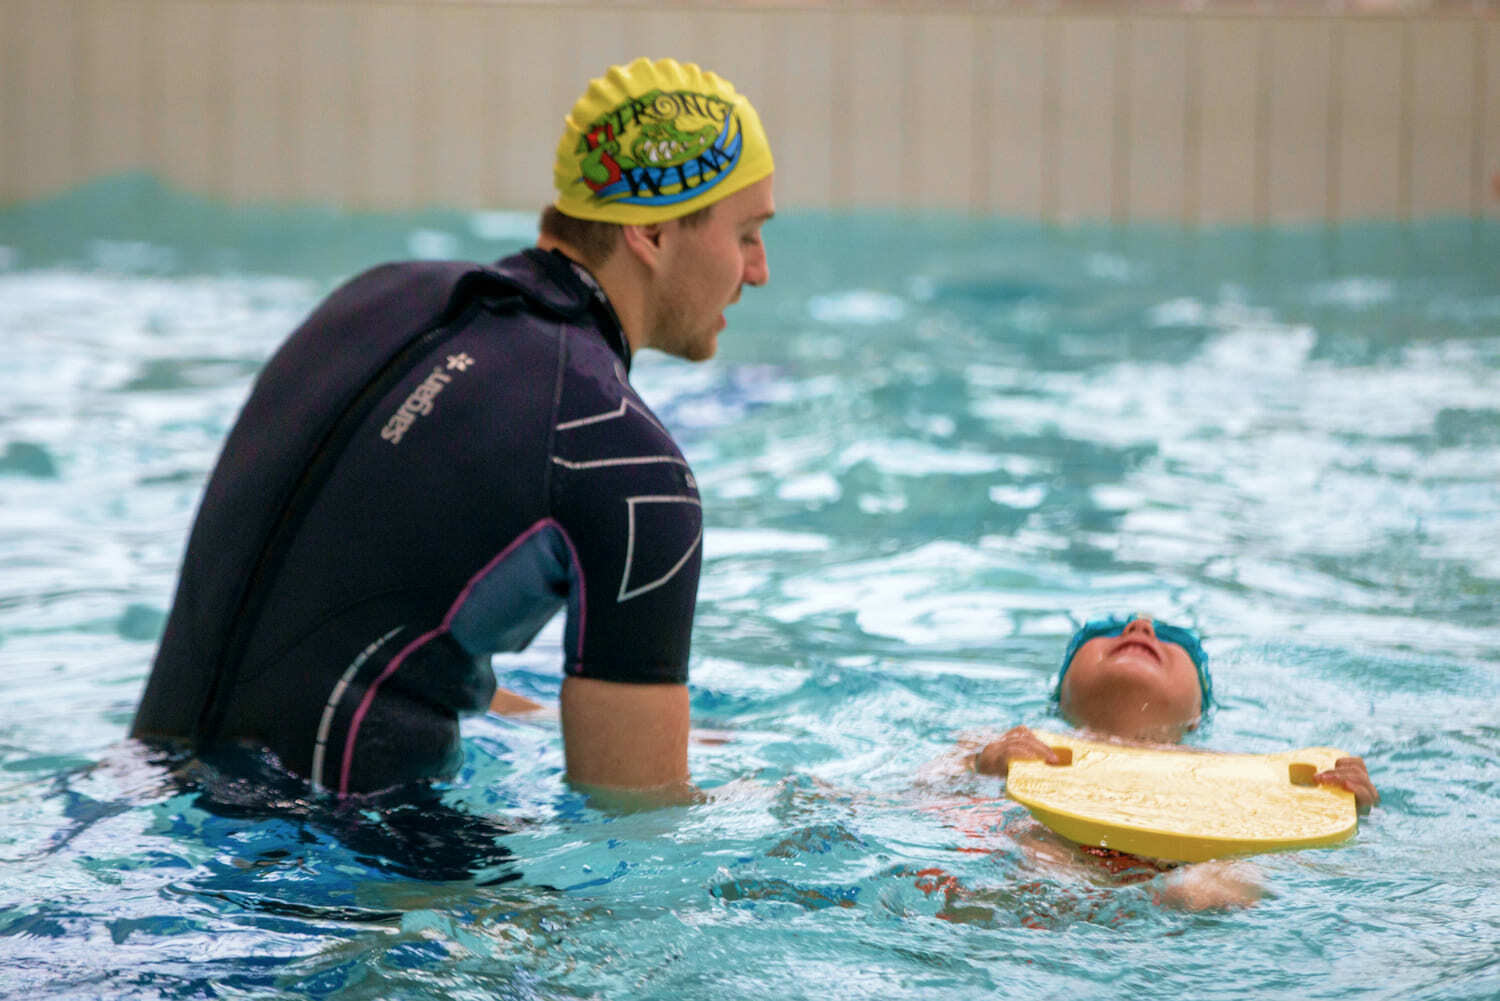 Индивидуальное обучение плаванию ребенка, тренер по плаванию в бассейне детей, детский тренер по плаванию Довгалюк Роман в Москве 